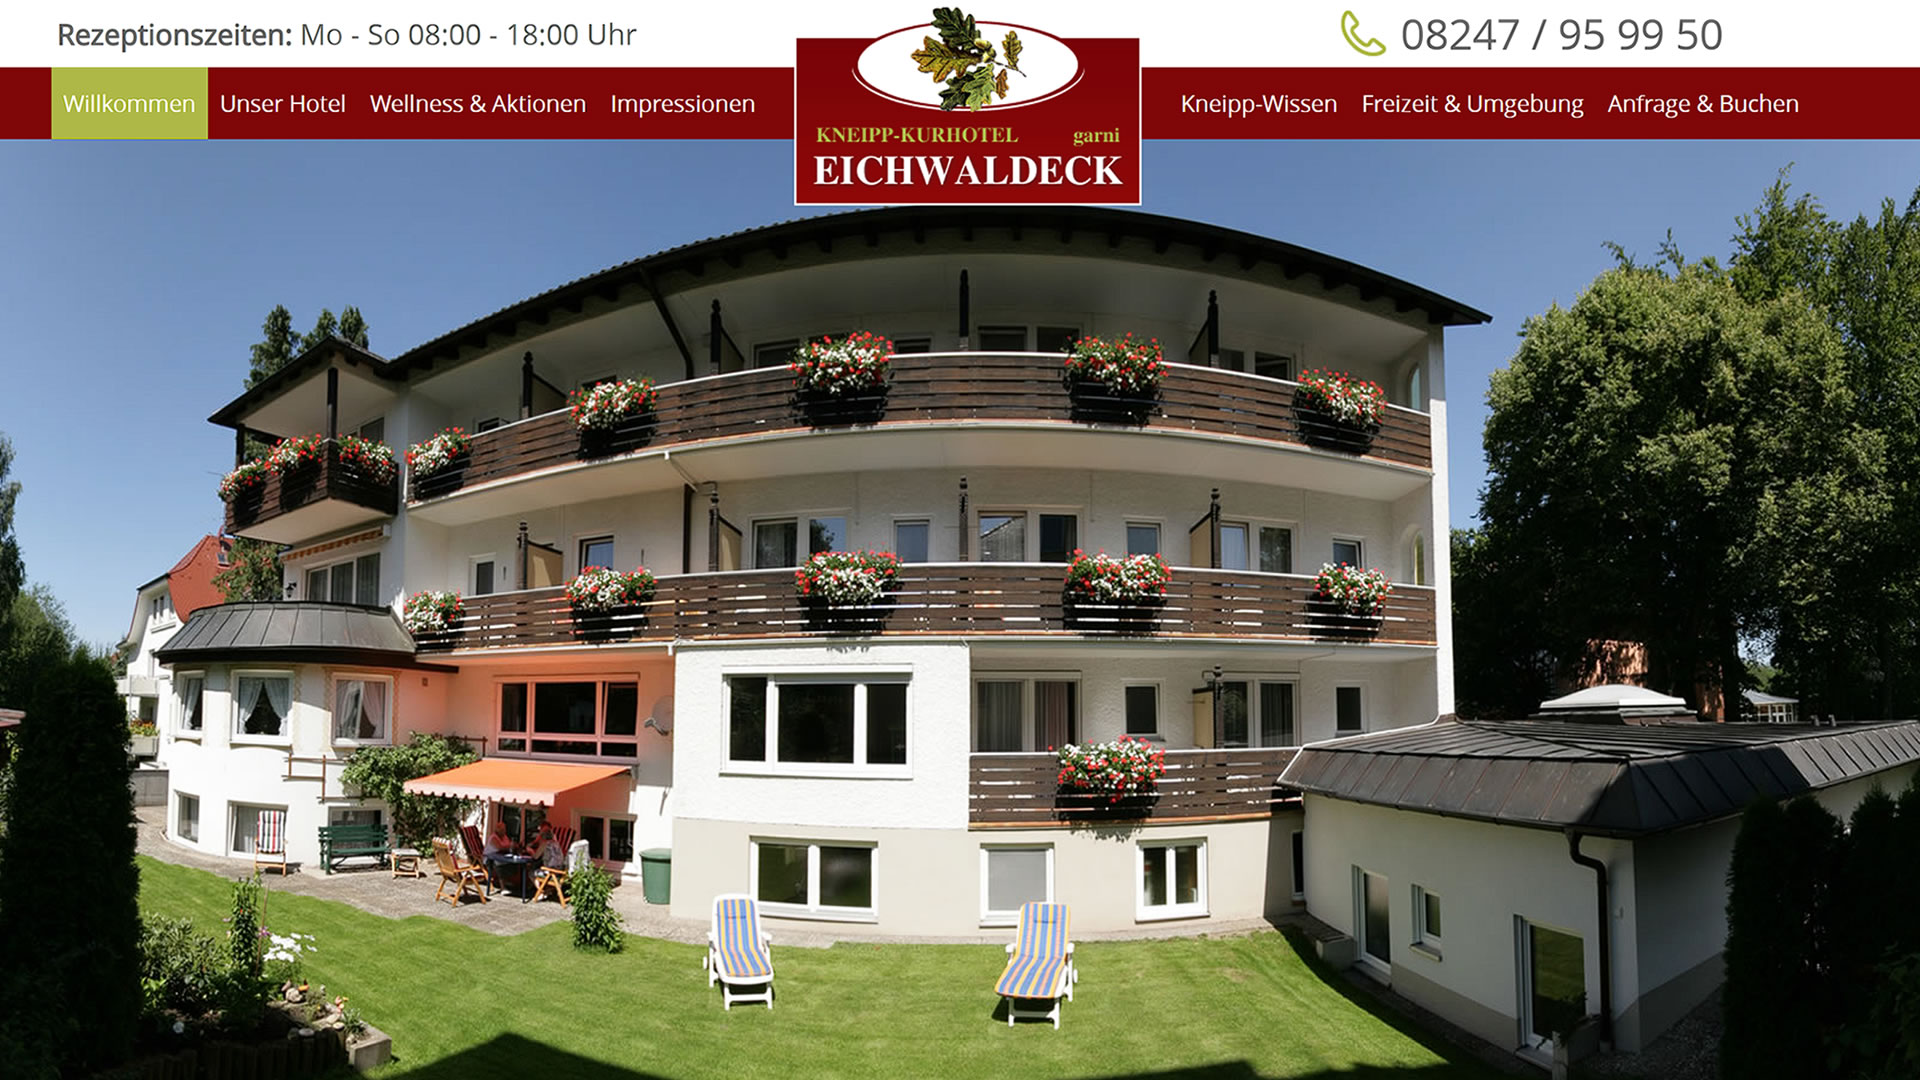 Webseite Kurhotel Eichwaldeck e. K.